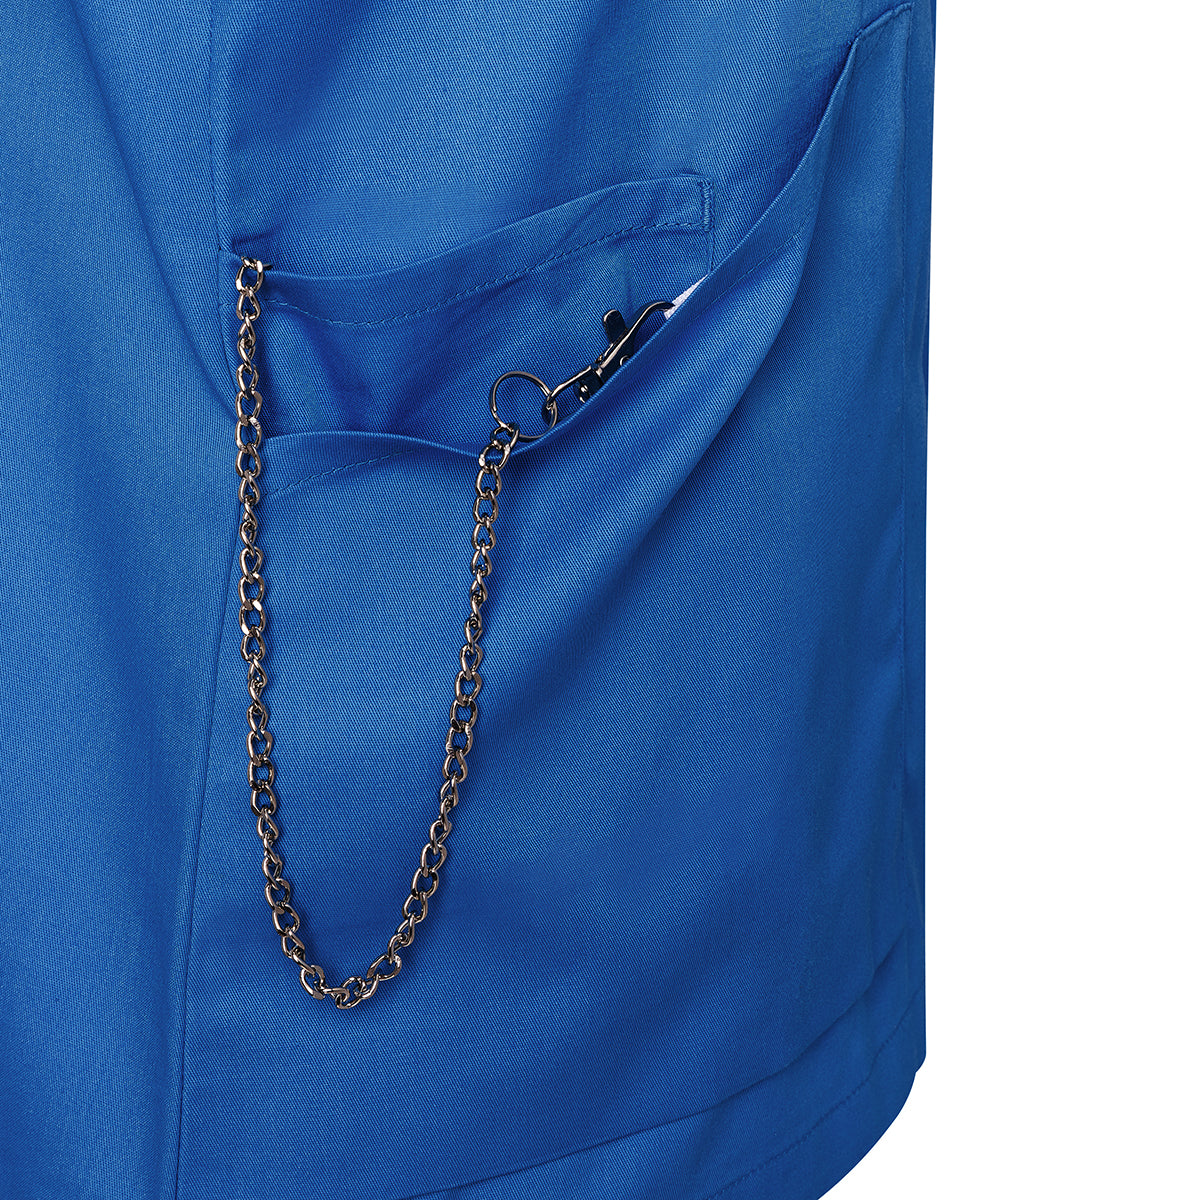 (6 stk.) Karlowsky - Kortærmet jakke til kvinder Essential - Royal Blue - Størrelse: 54